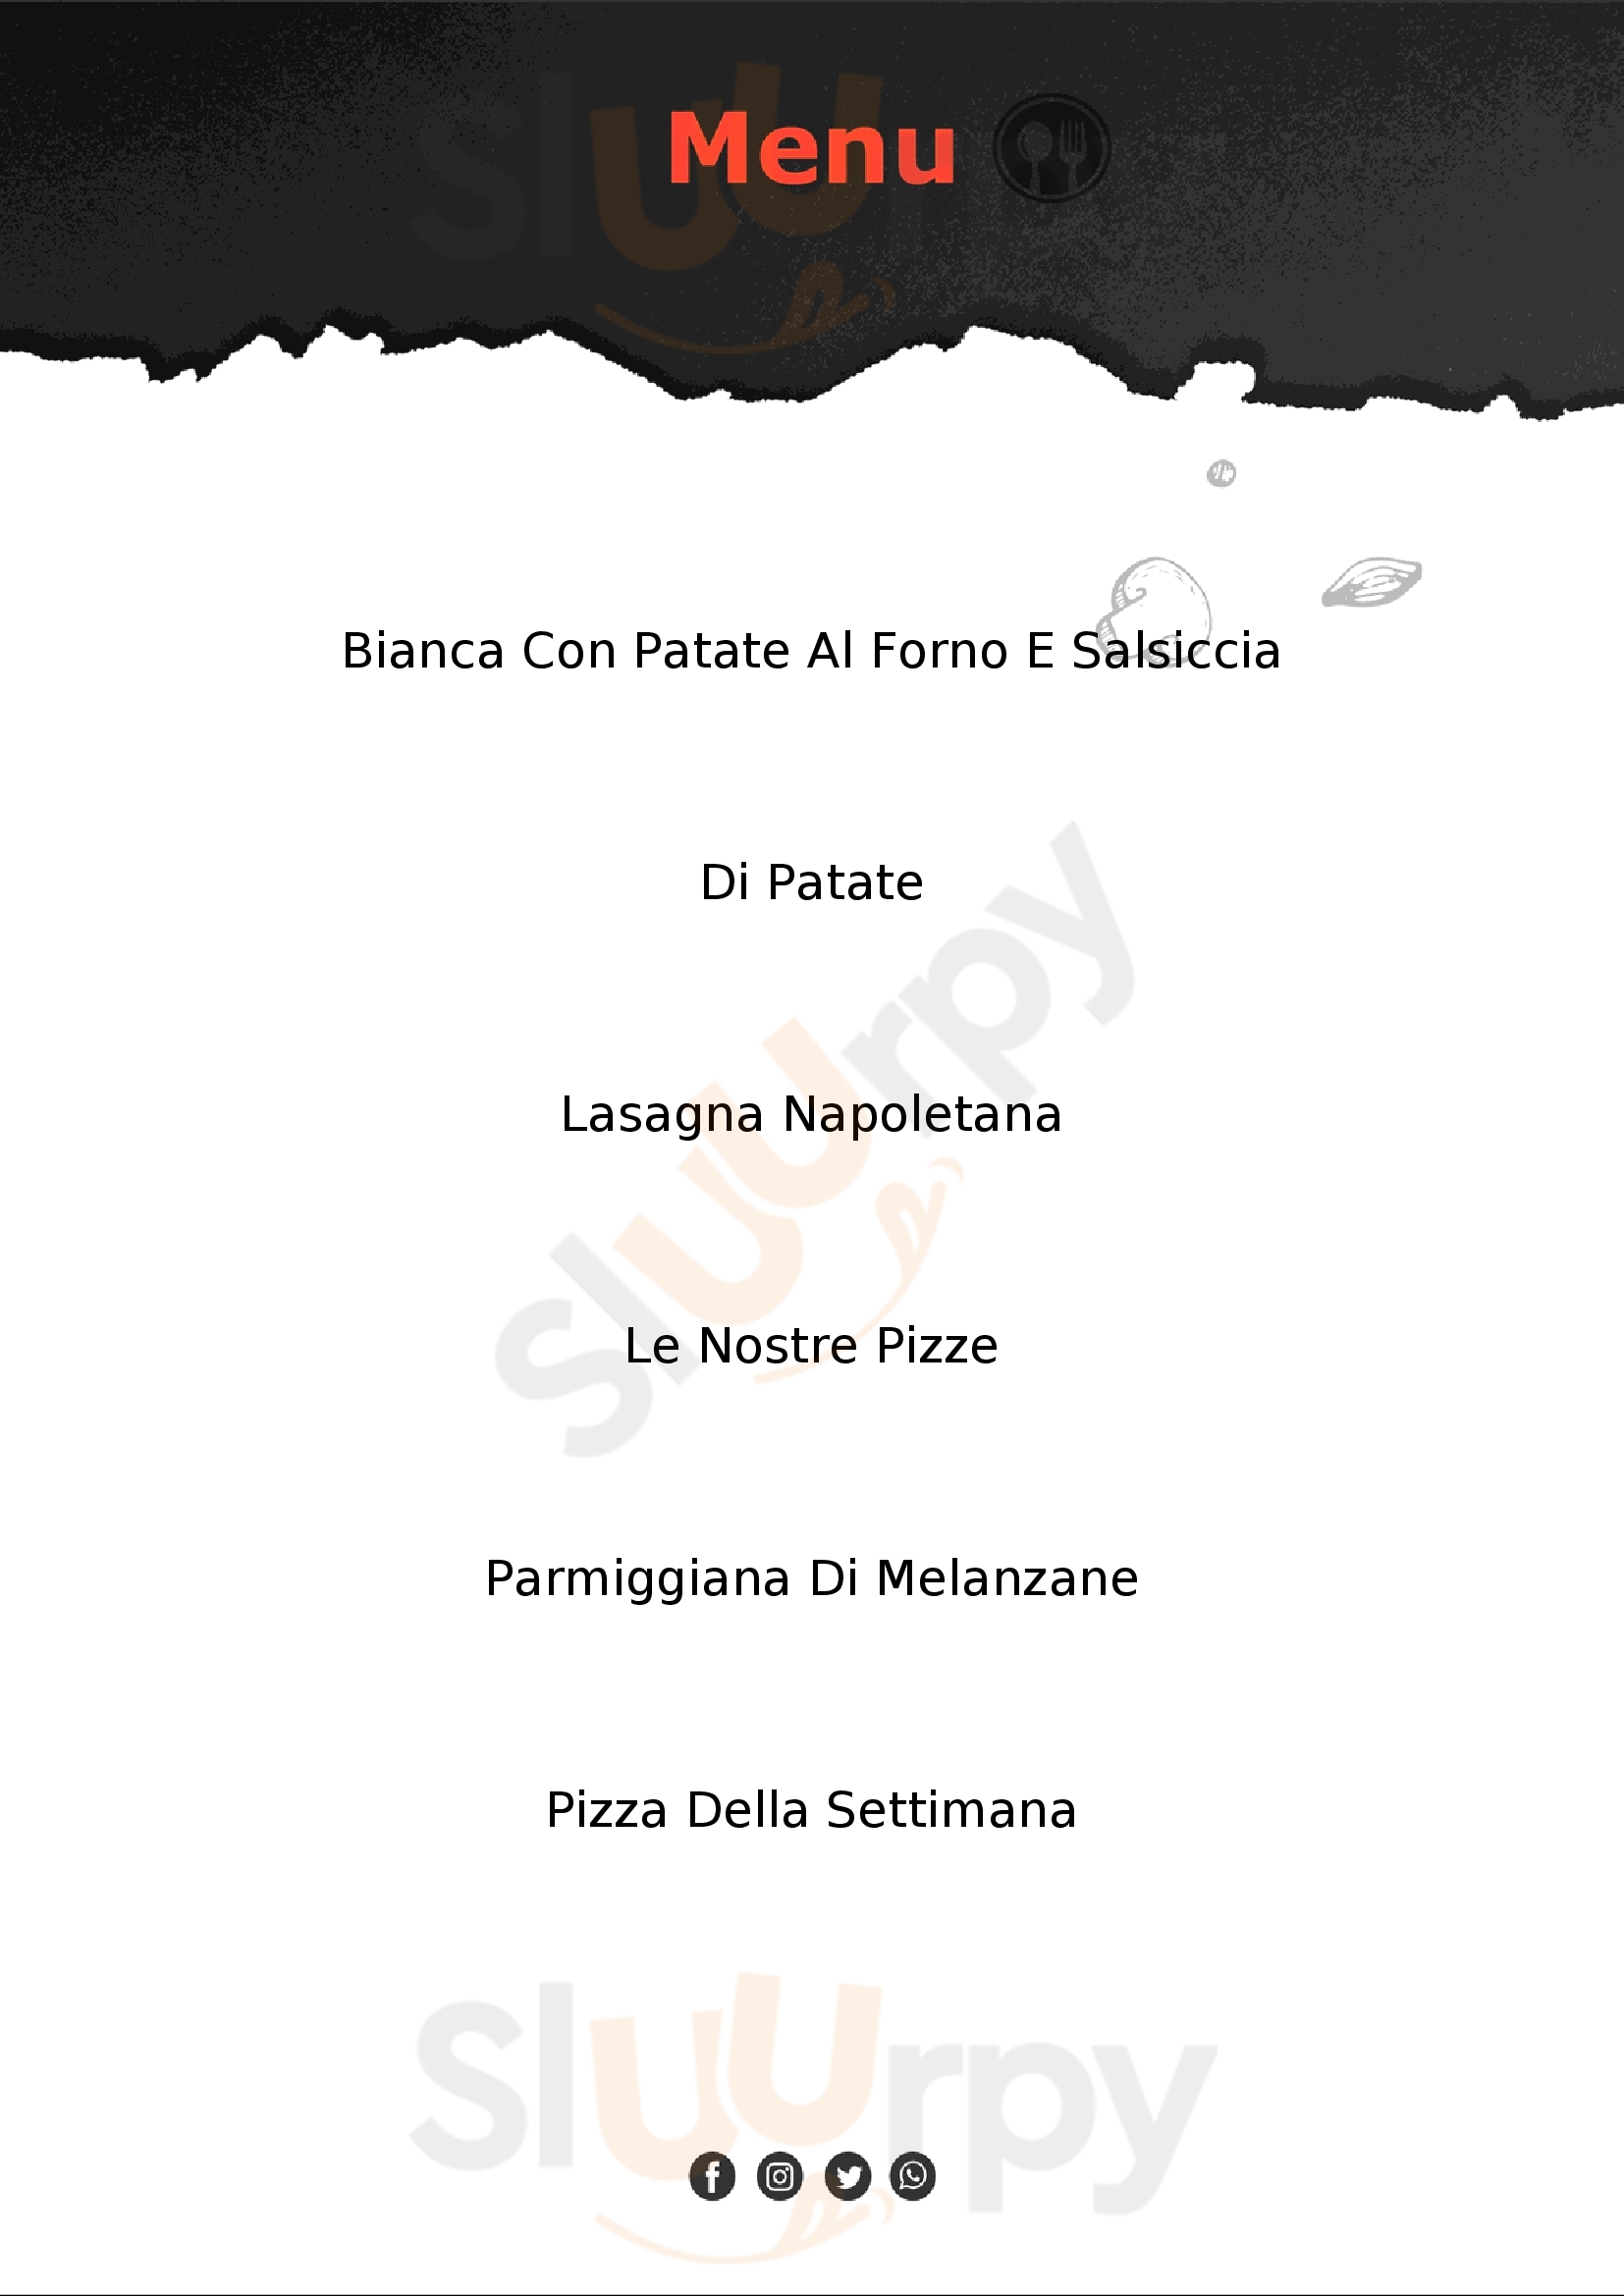 Duelire - Gastronomia - Pizzeria Campana Milano menù 1 pagina